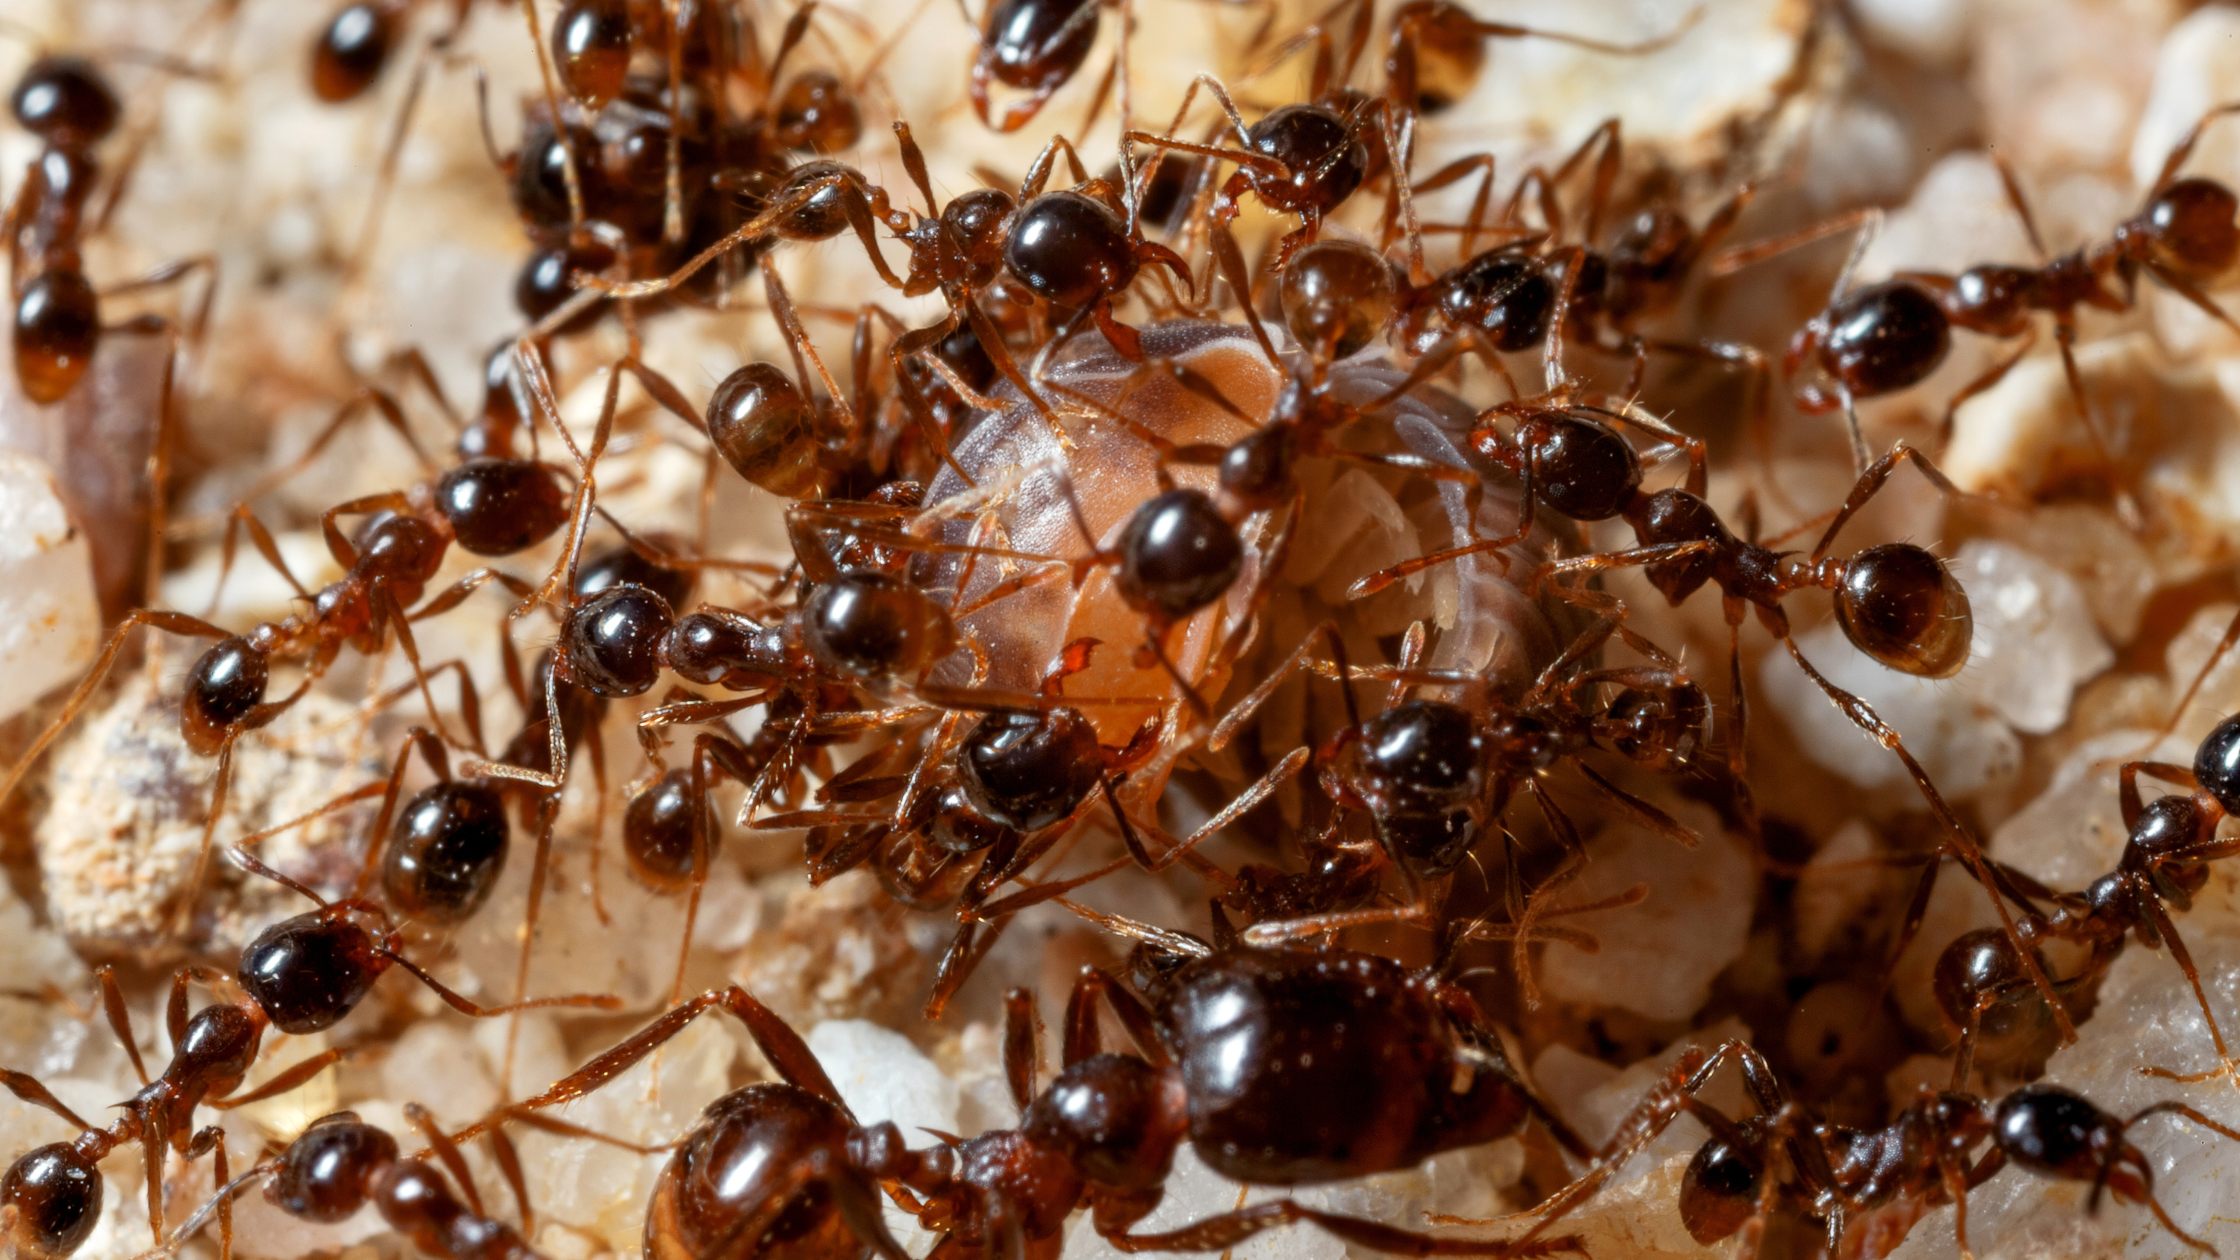 ant control, ant exterminator, ant pest control